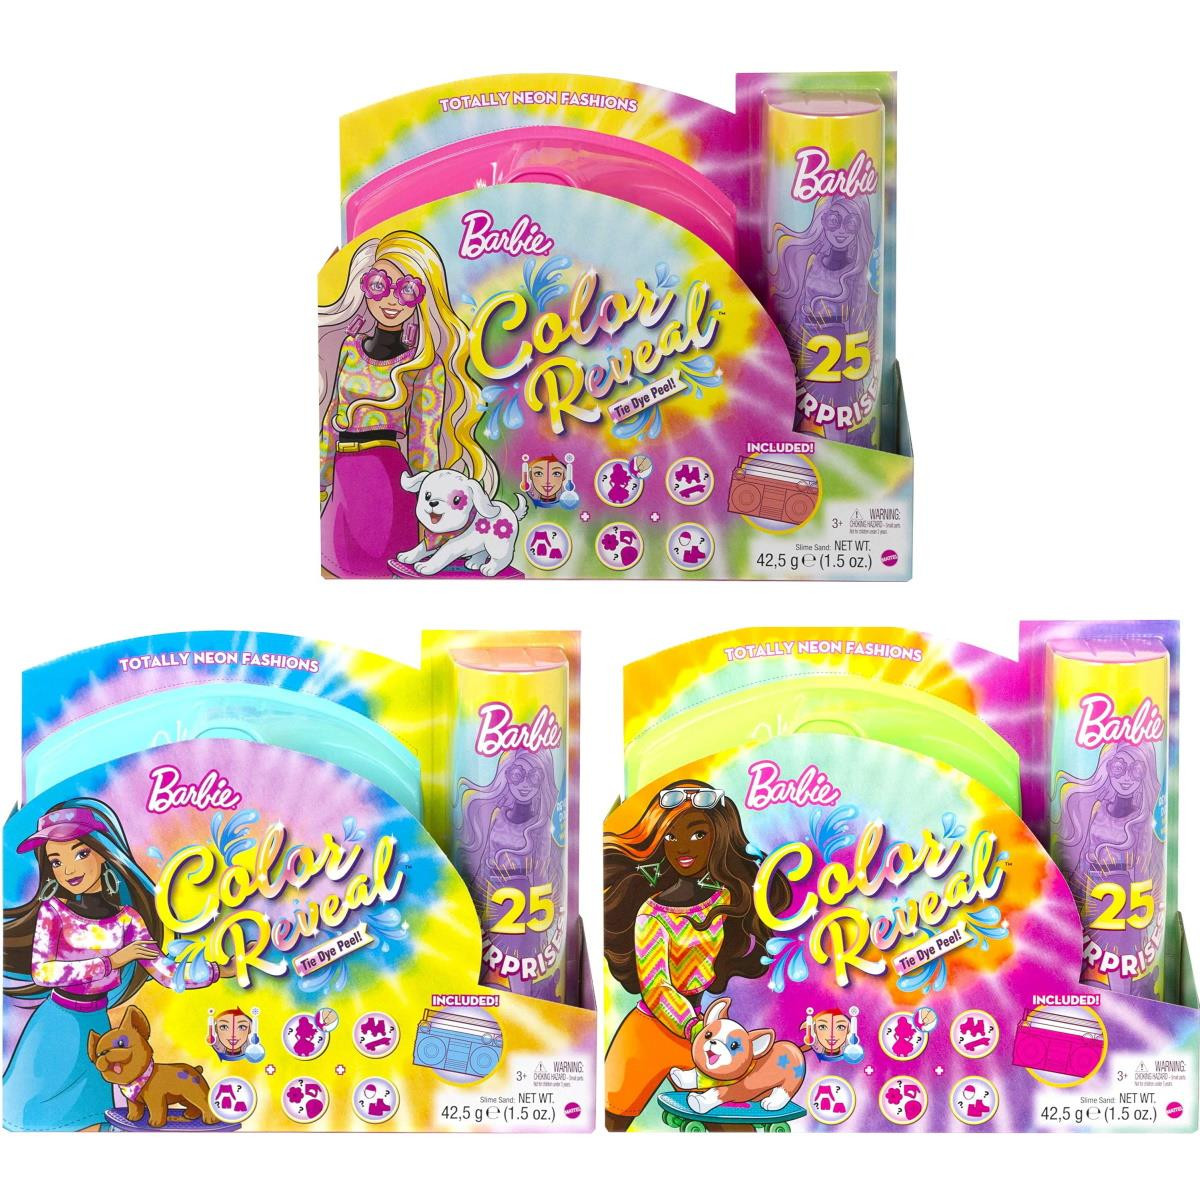 Barbie Crayola De Pintar Roupa Colorido Promoção Original em